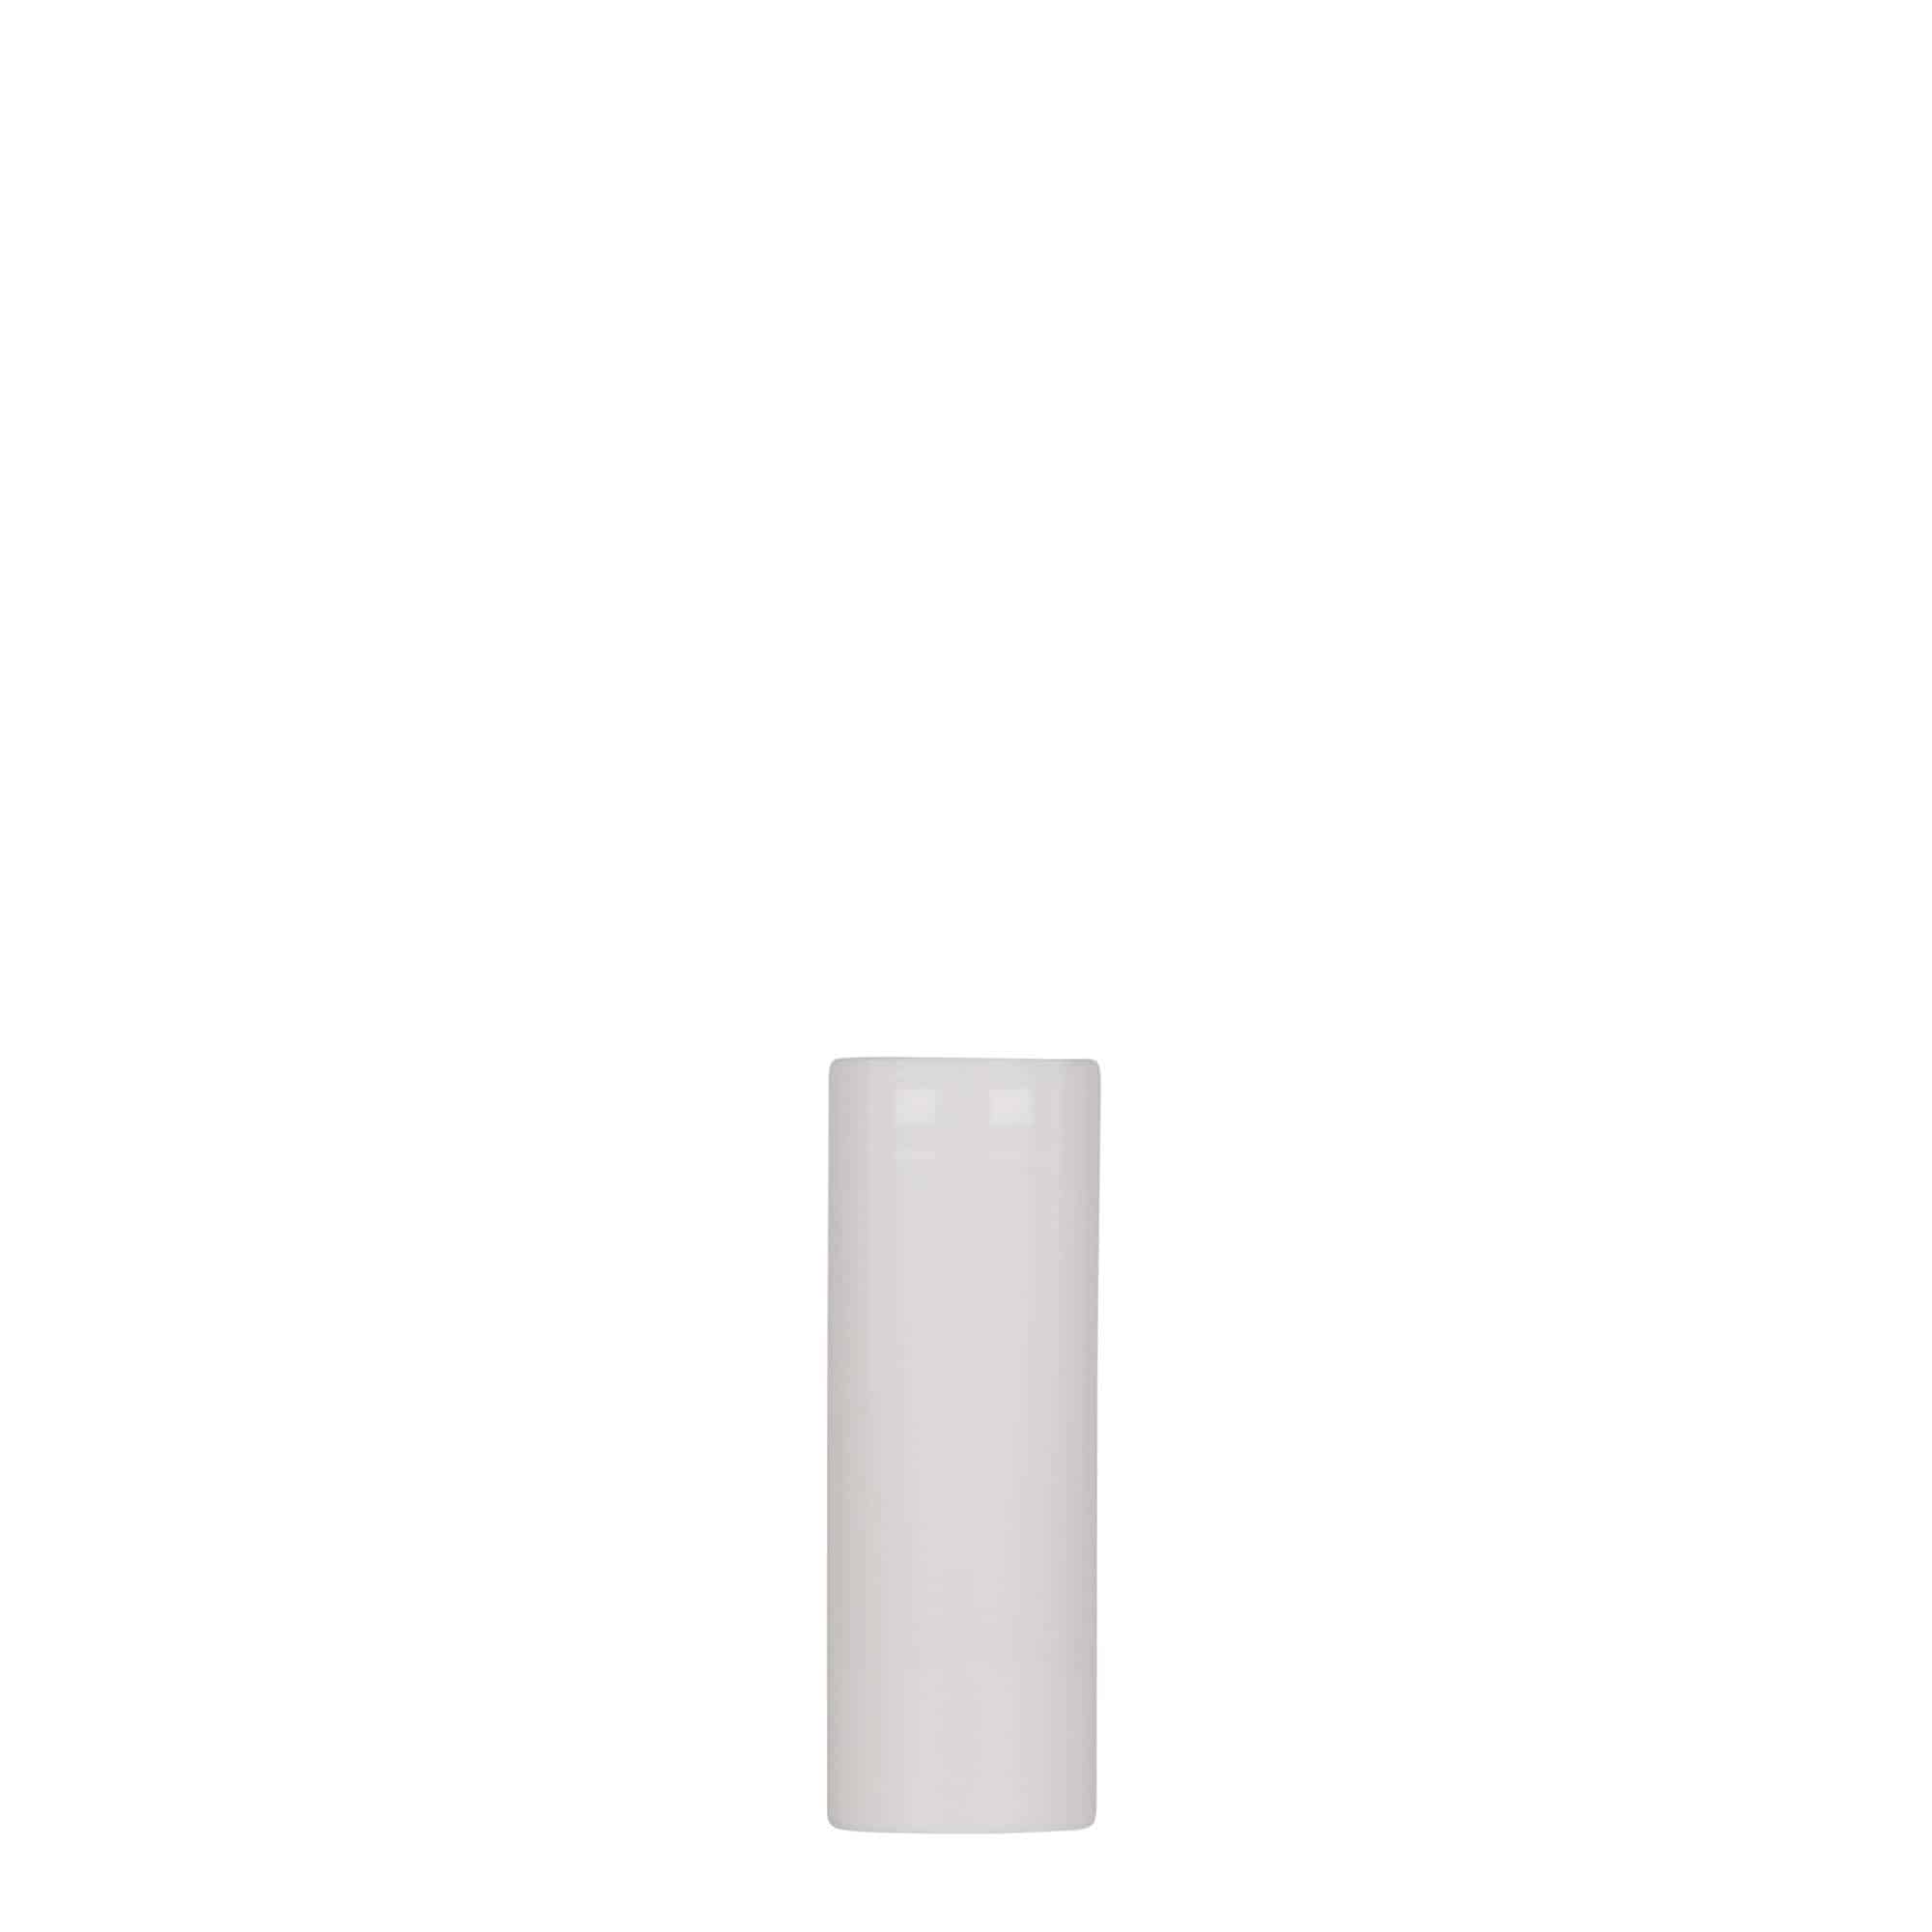 Bezvzduchový dávkovač 10 ml 'Nano', plast PP, bílý